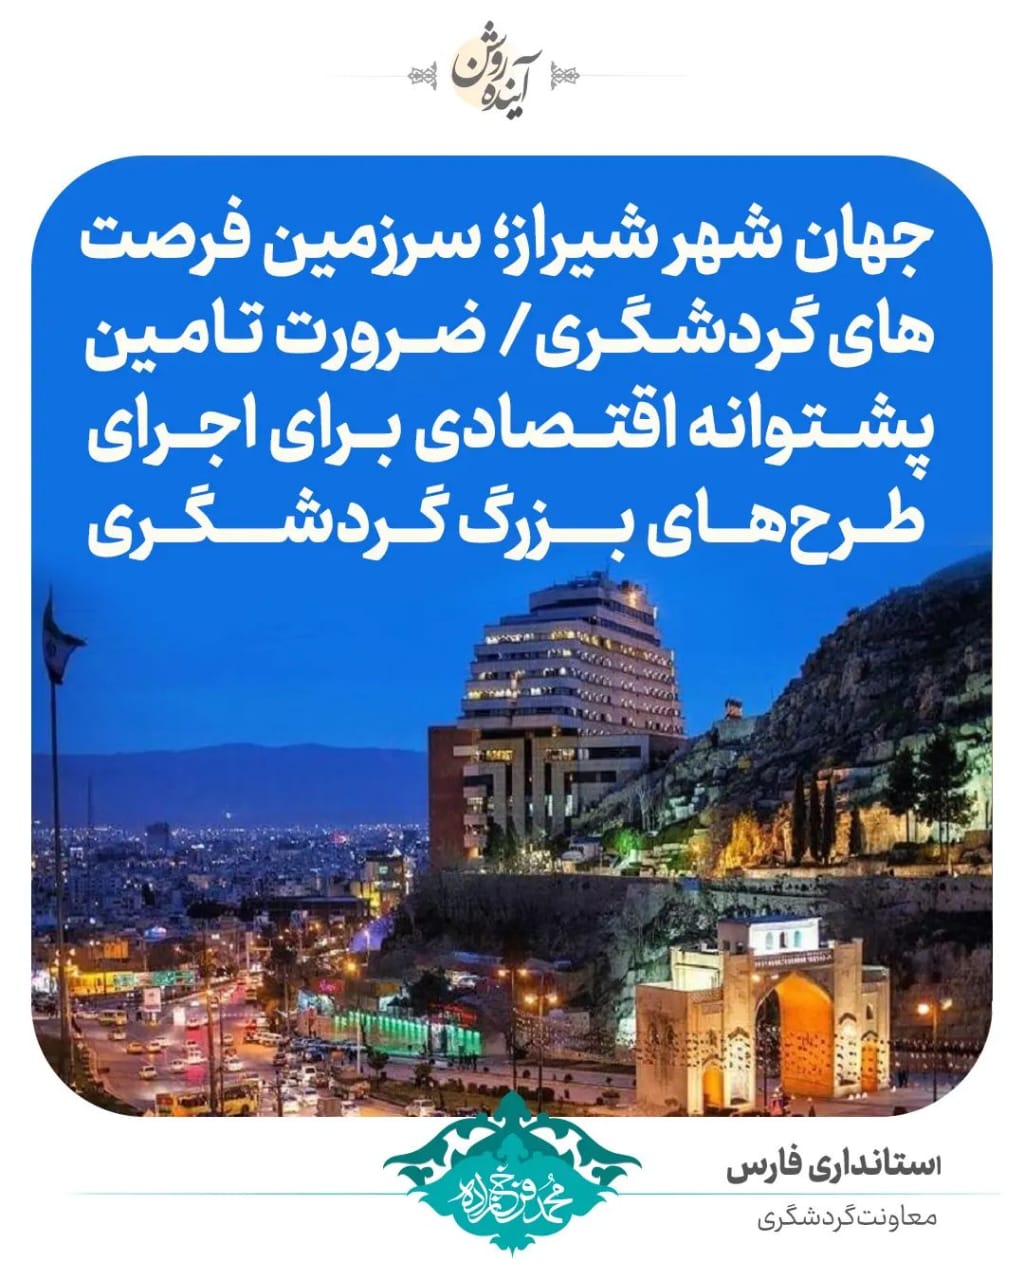 جهان شهر شیراز؛ سرزمین فرصت های گردشگری/ ضرورت تأمین پشتوانه طرحهای بزرگ گردشگری